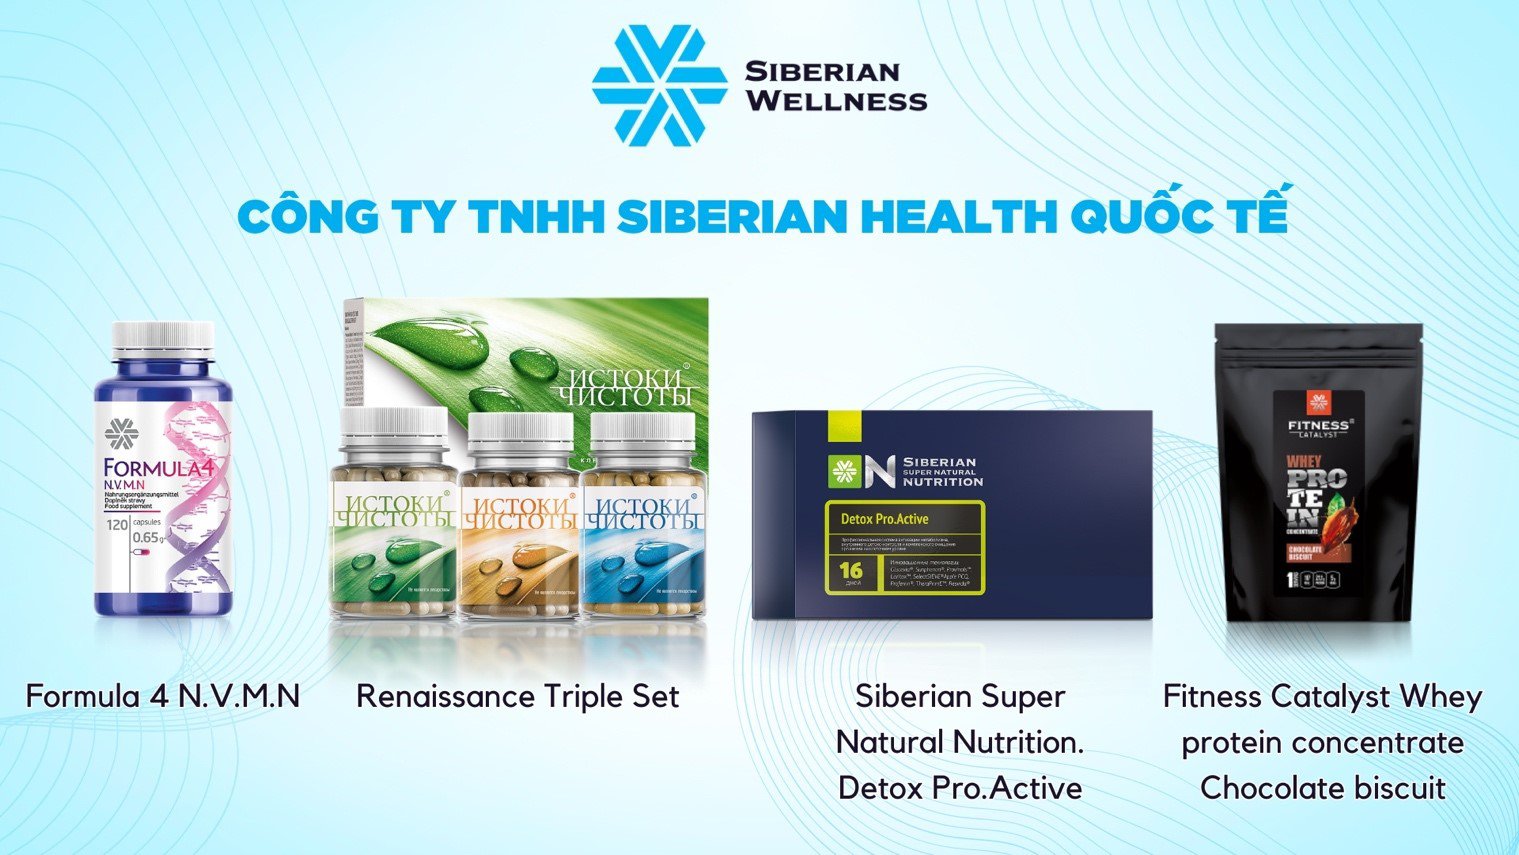 Siberian Wellness lần thứ 9 nhận giải thưởng Sản phẩm vàng vì sức khỏe cộng đồng - 2